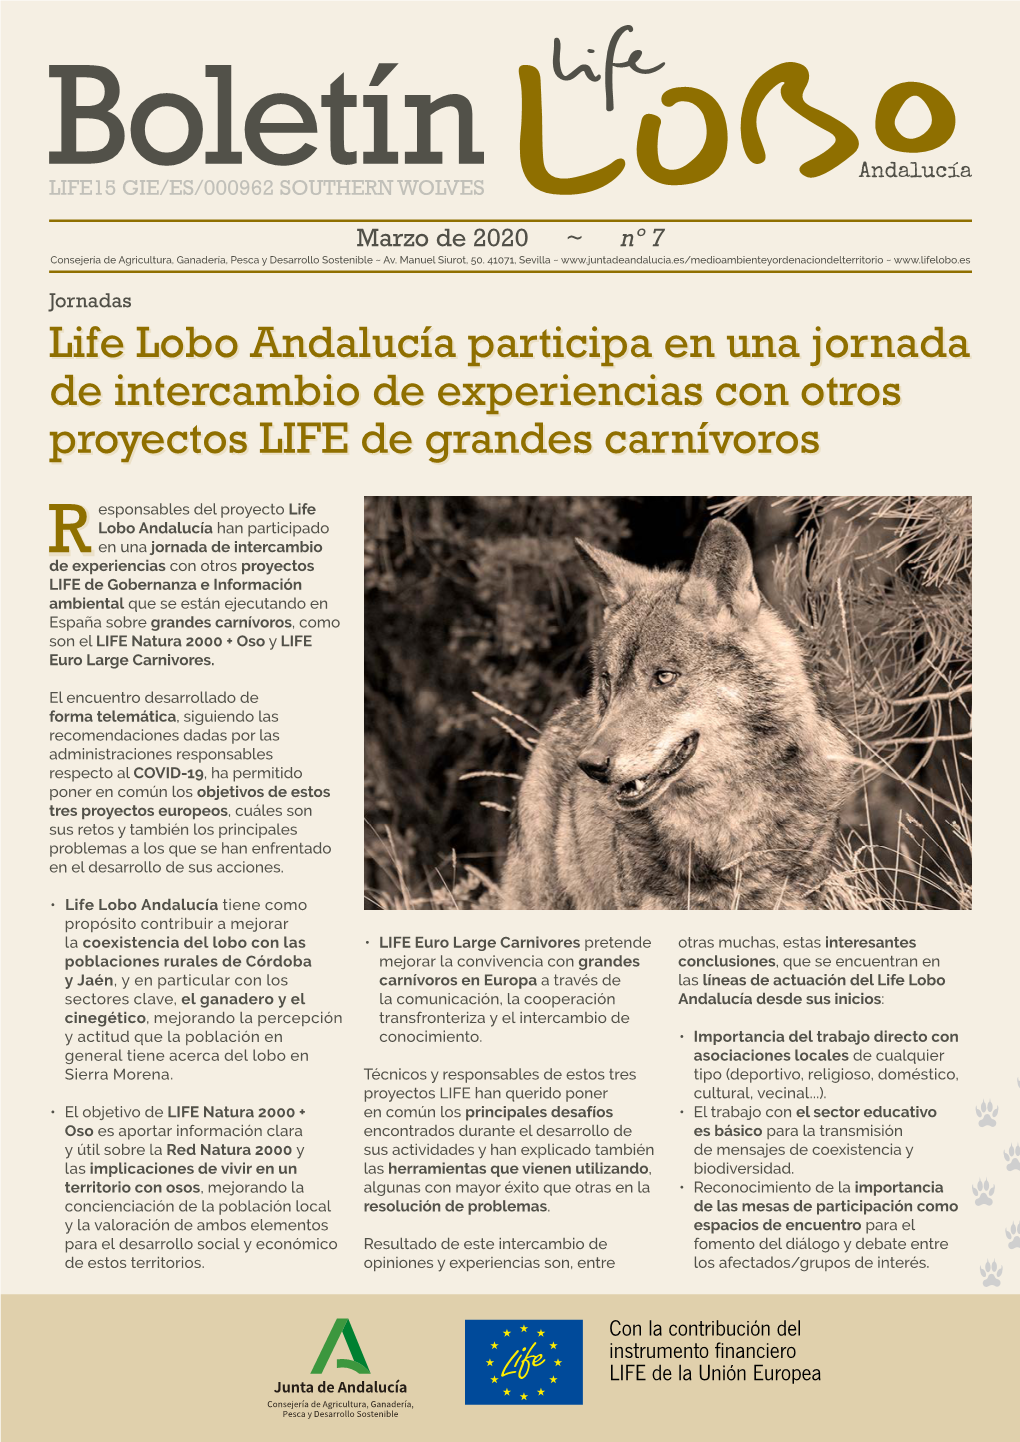 Life Lobo Andalucía Participa En Una Jornada De Intercambio De